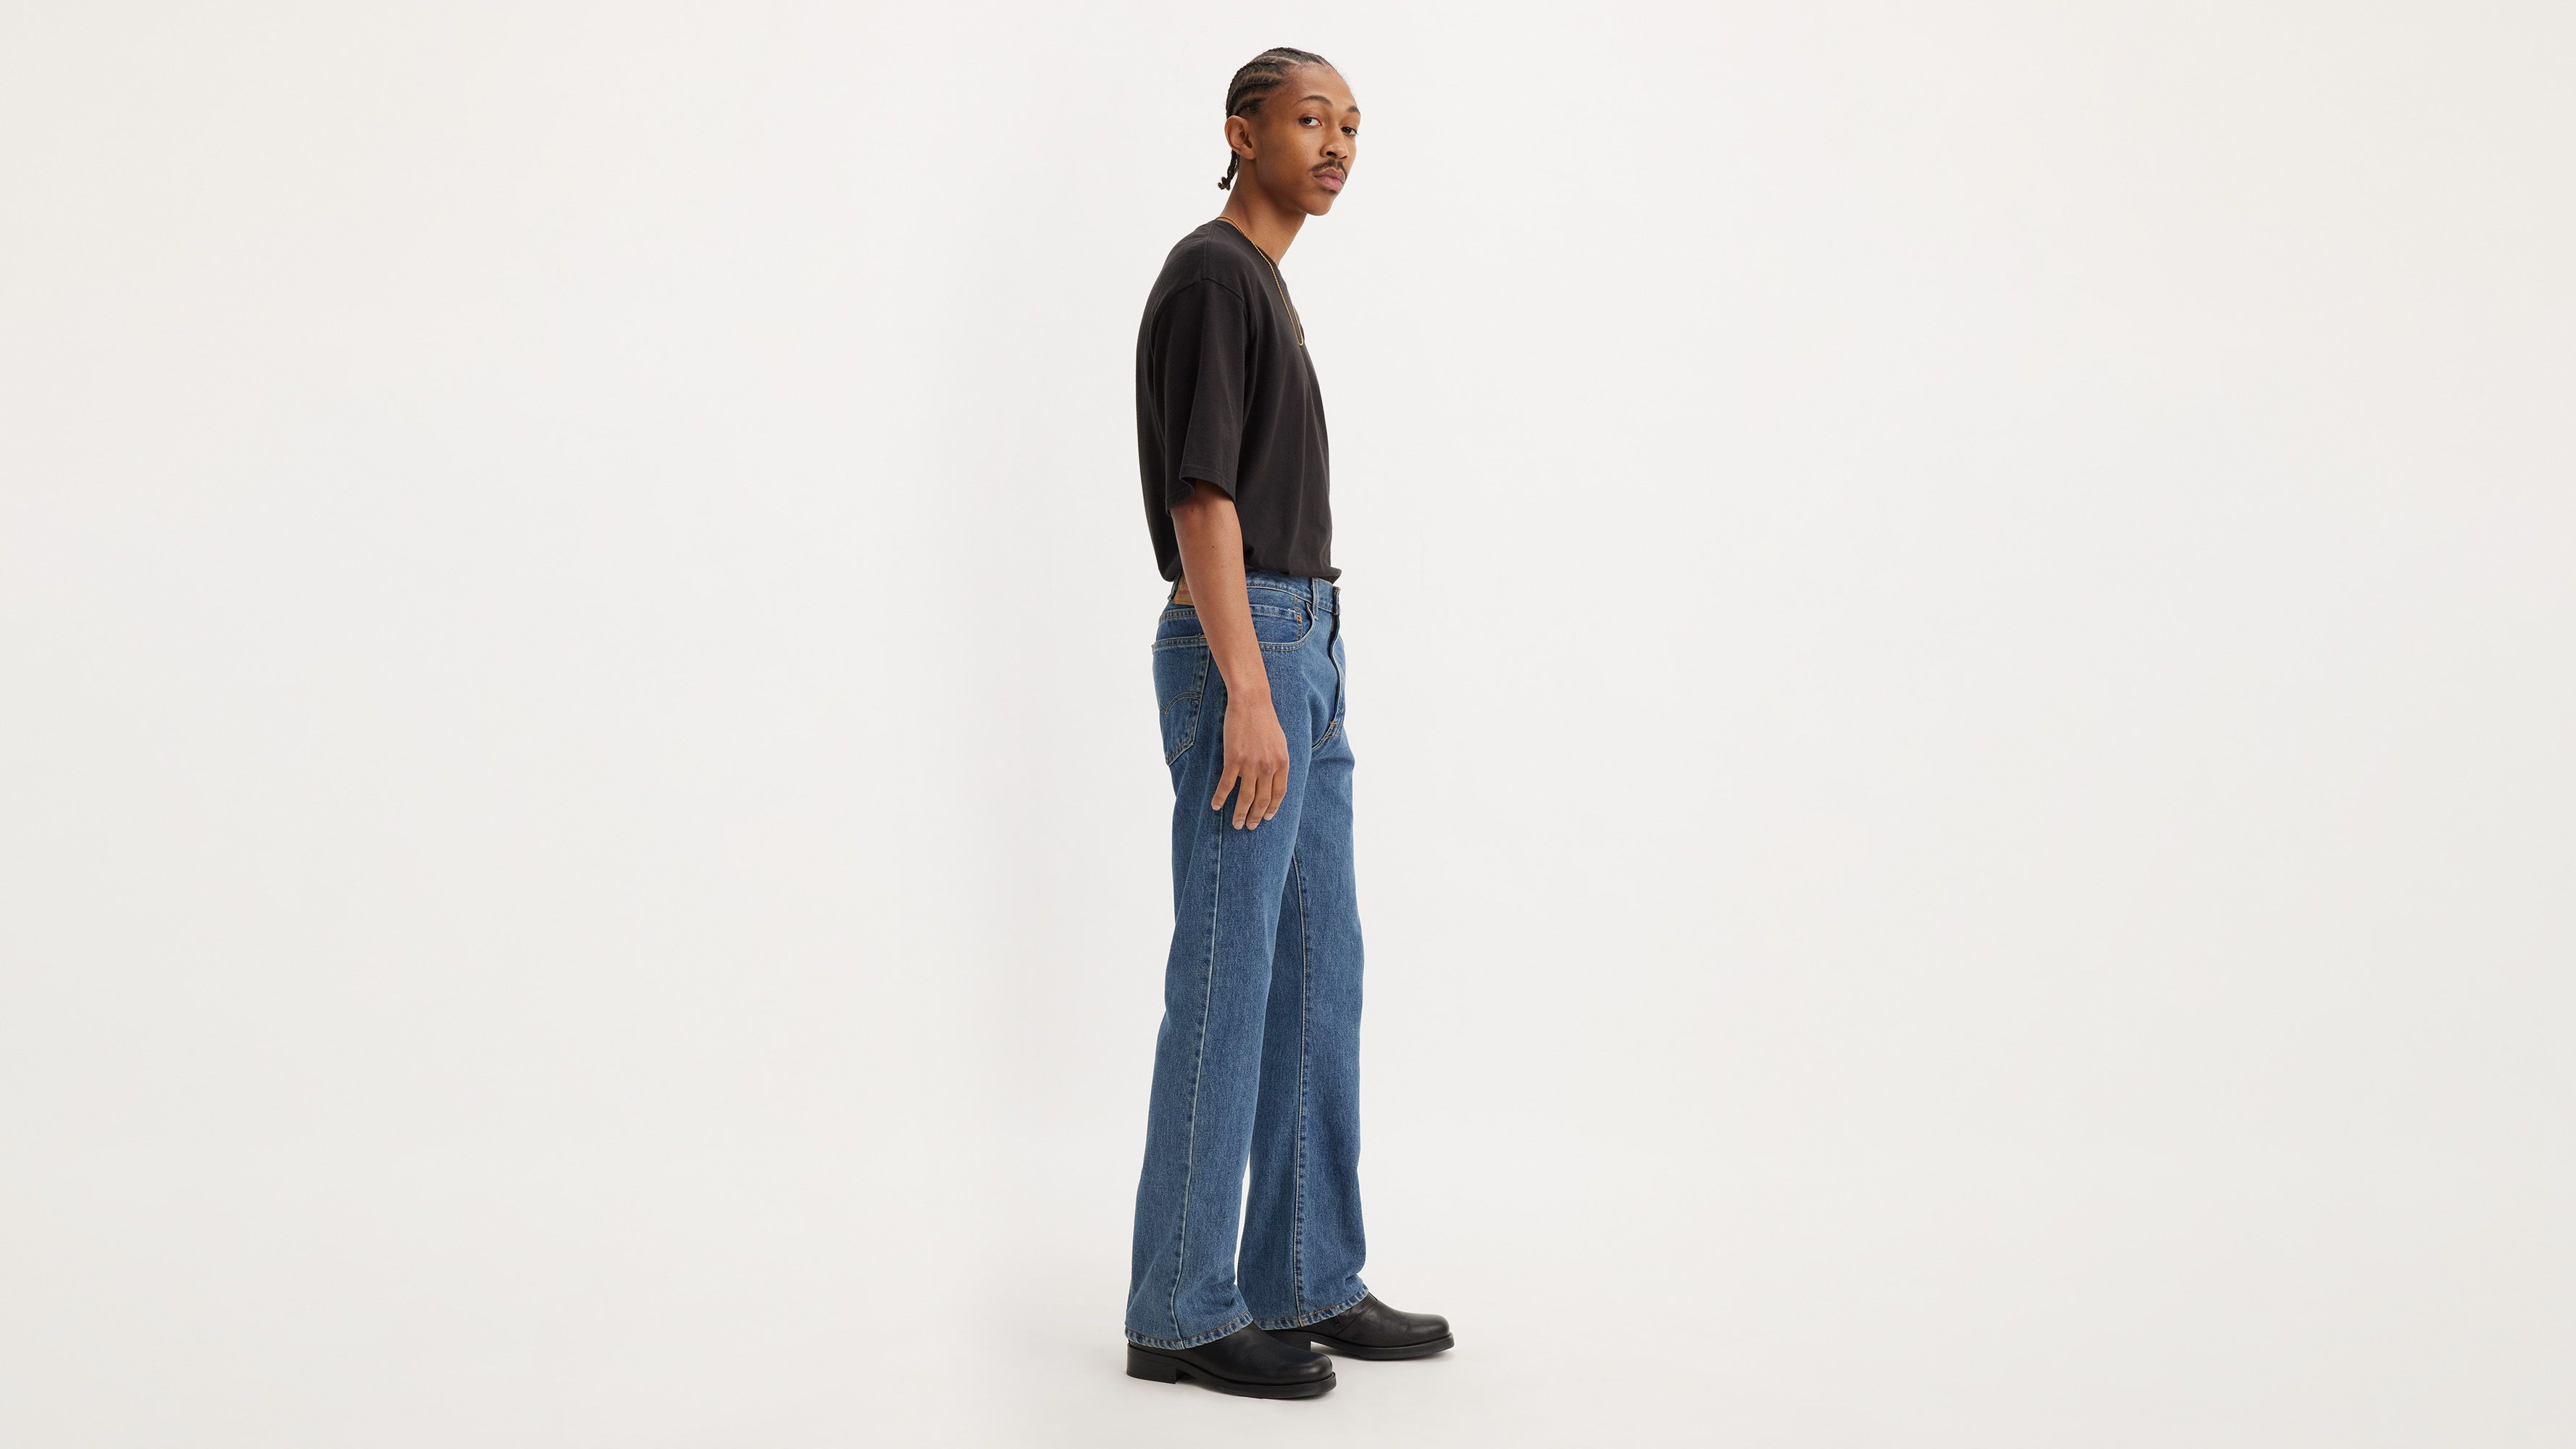 levi's 517 bootcut jeans mens